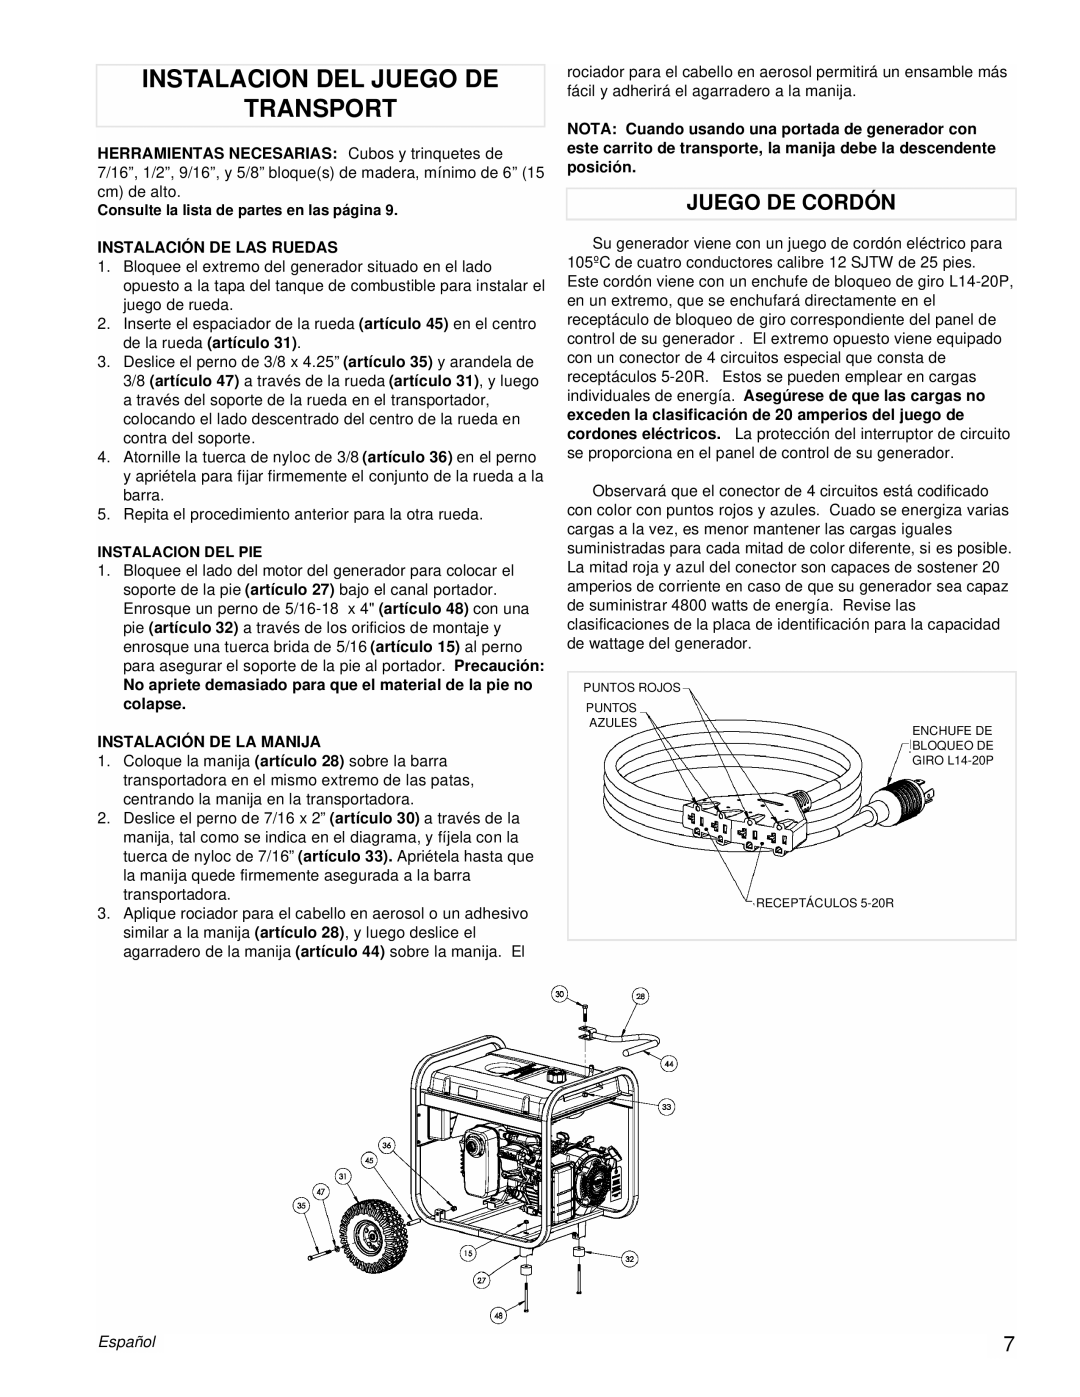 Powermate PM0435252 manual Instalacion Del Juego De Transport, Juego De Cordón, Español 